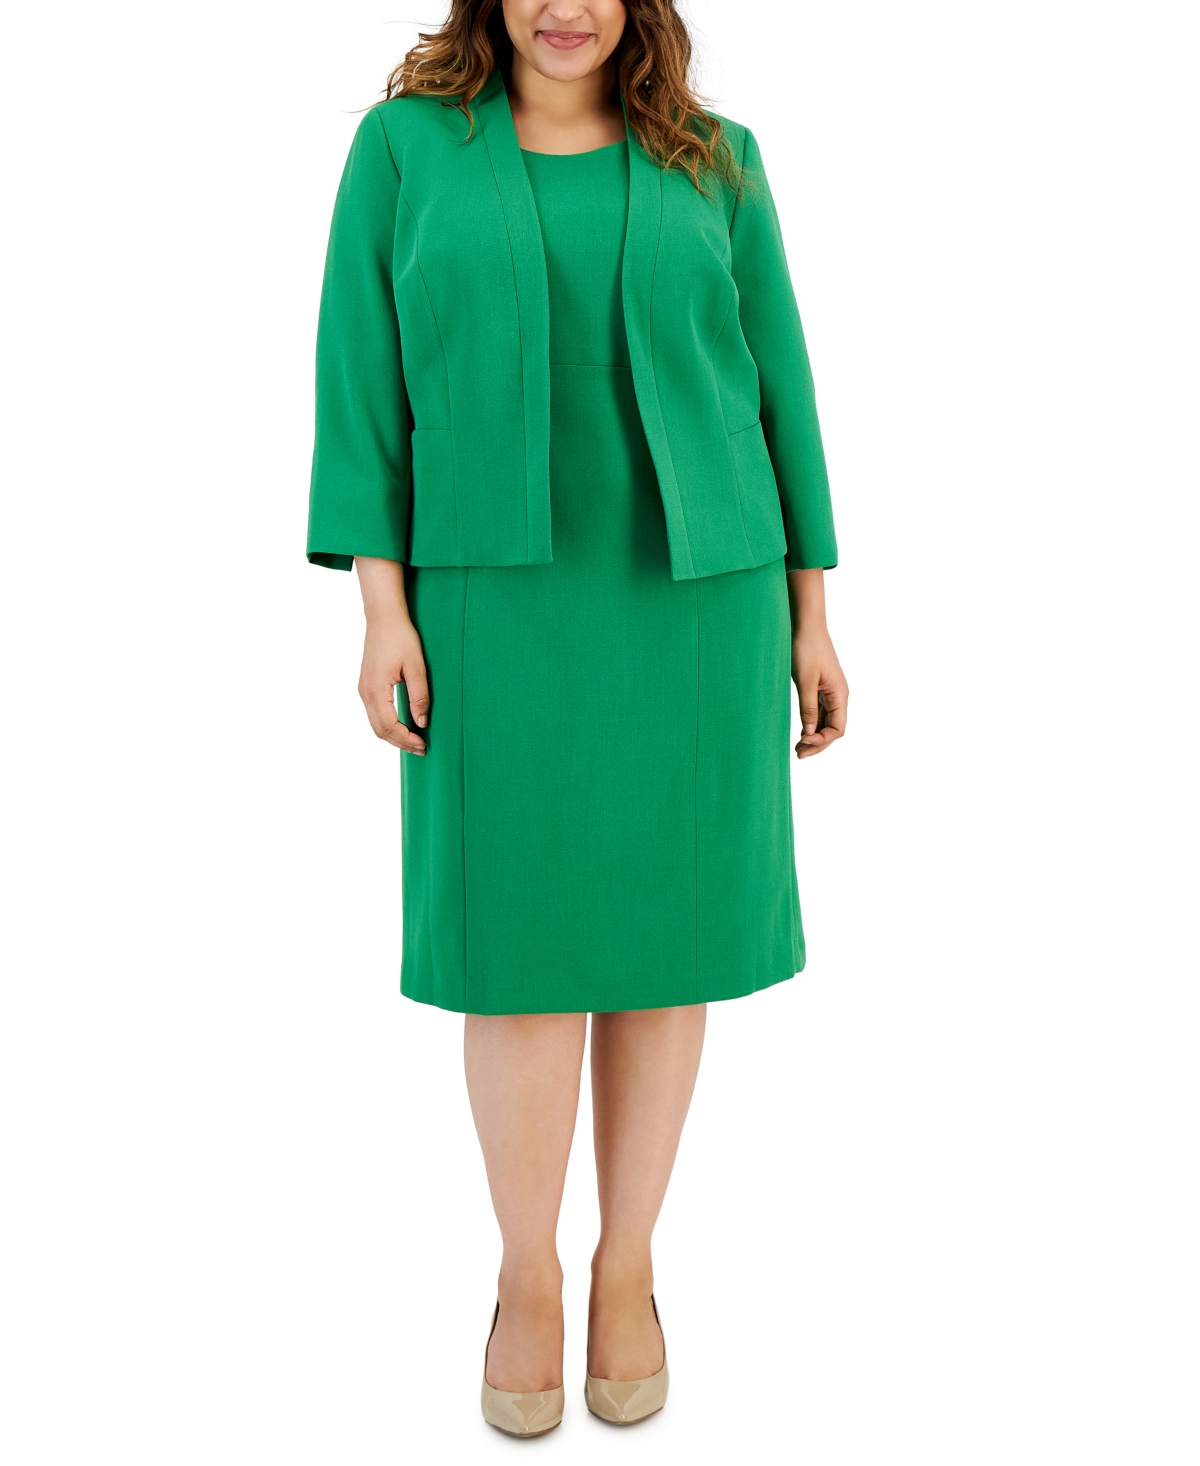 Le Suit Plus Size Crepe Open Front Jacket And Crewneck Sheath Dress Suit In Verde